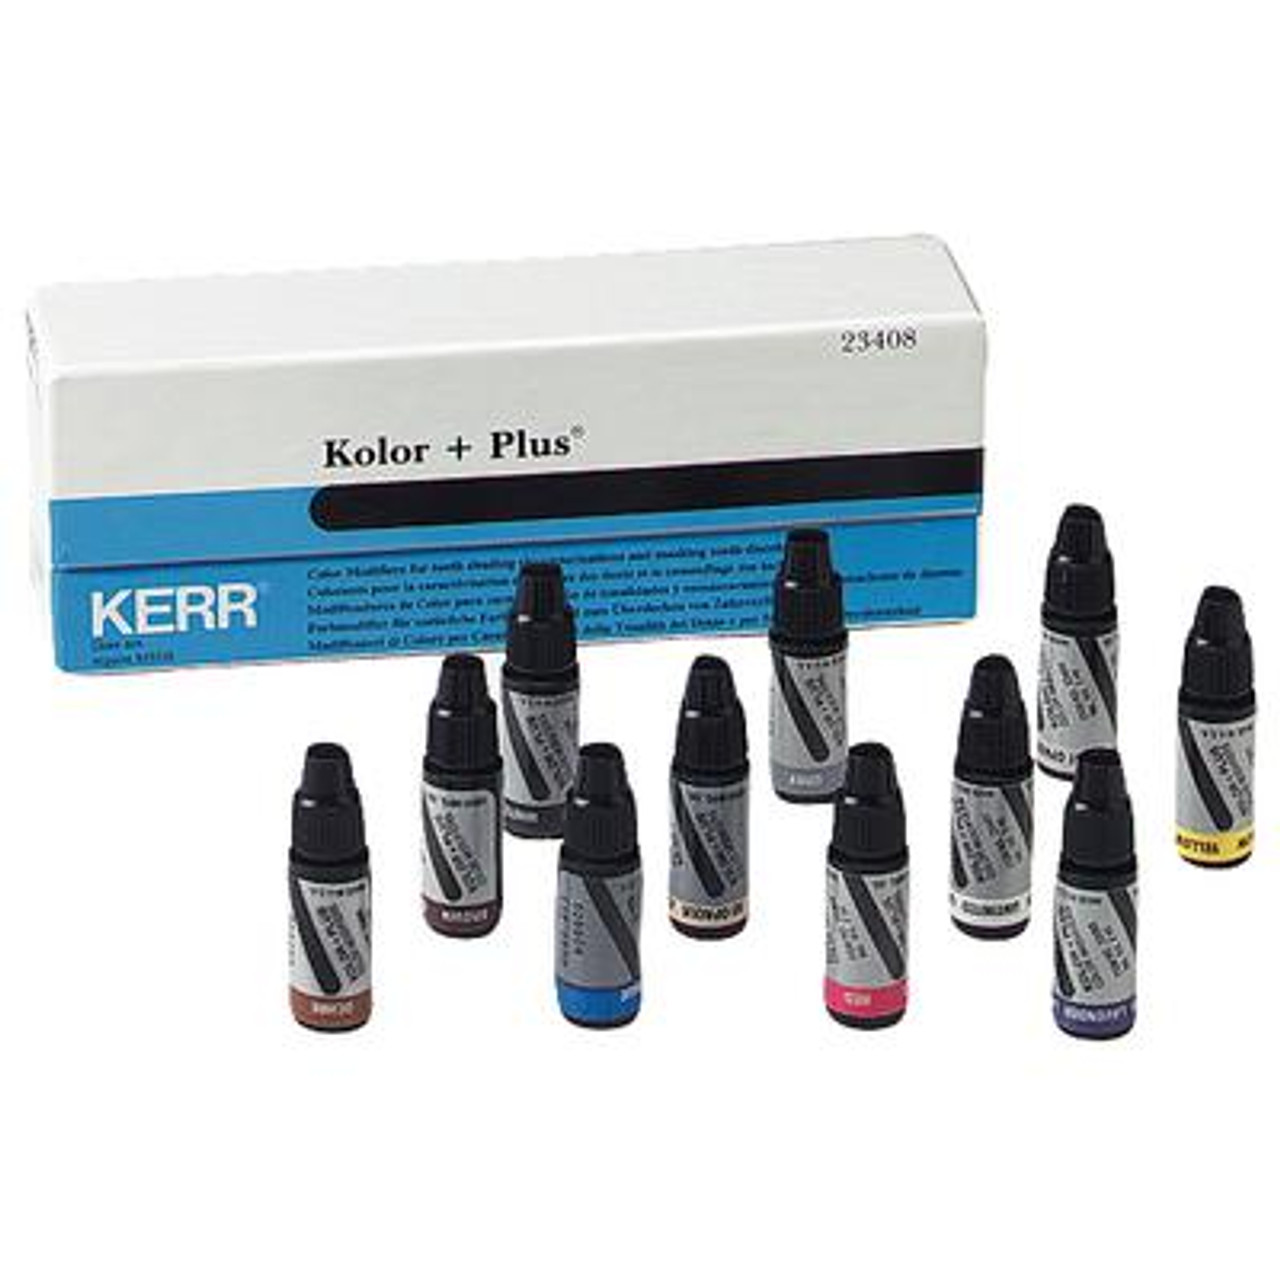 Kerr Kolor Plus Modifier Refill Bottles (2 ml) Untinted